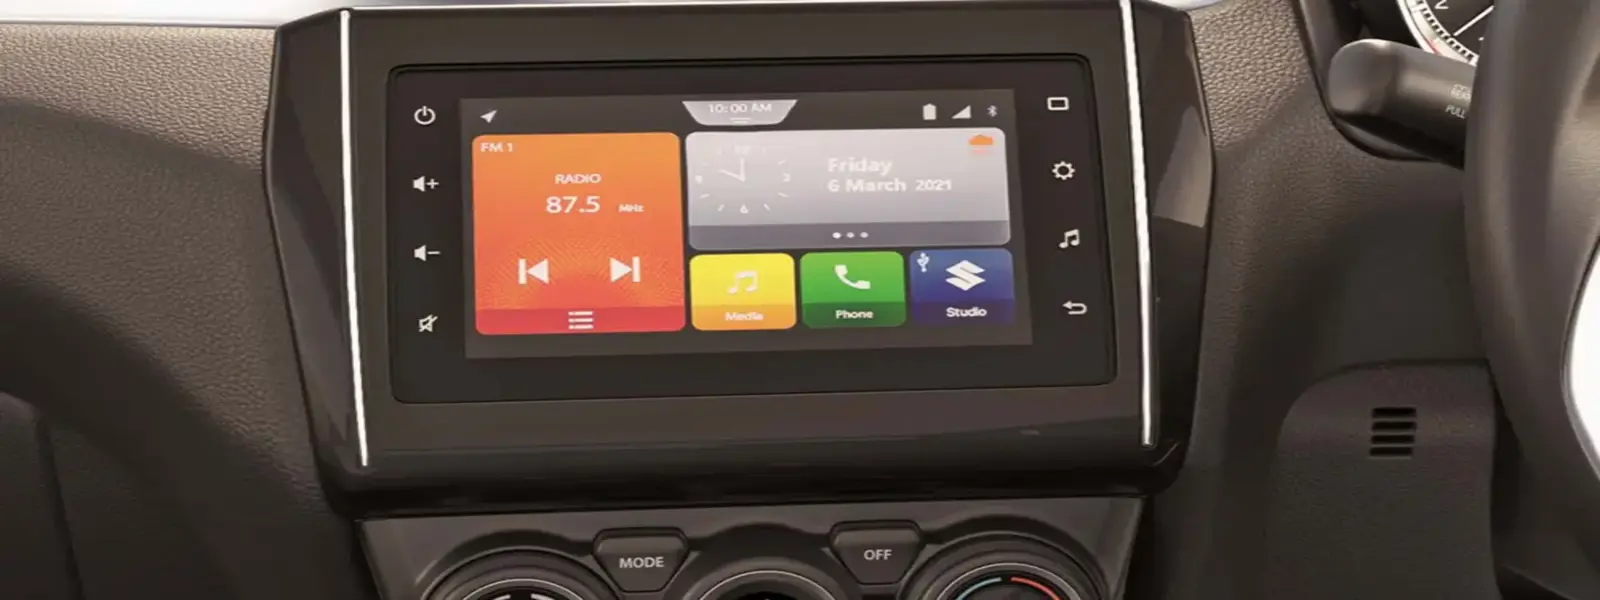 Swift- SmartPlay Infotainment System Beekay Auto  Chanda More, Asansol